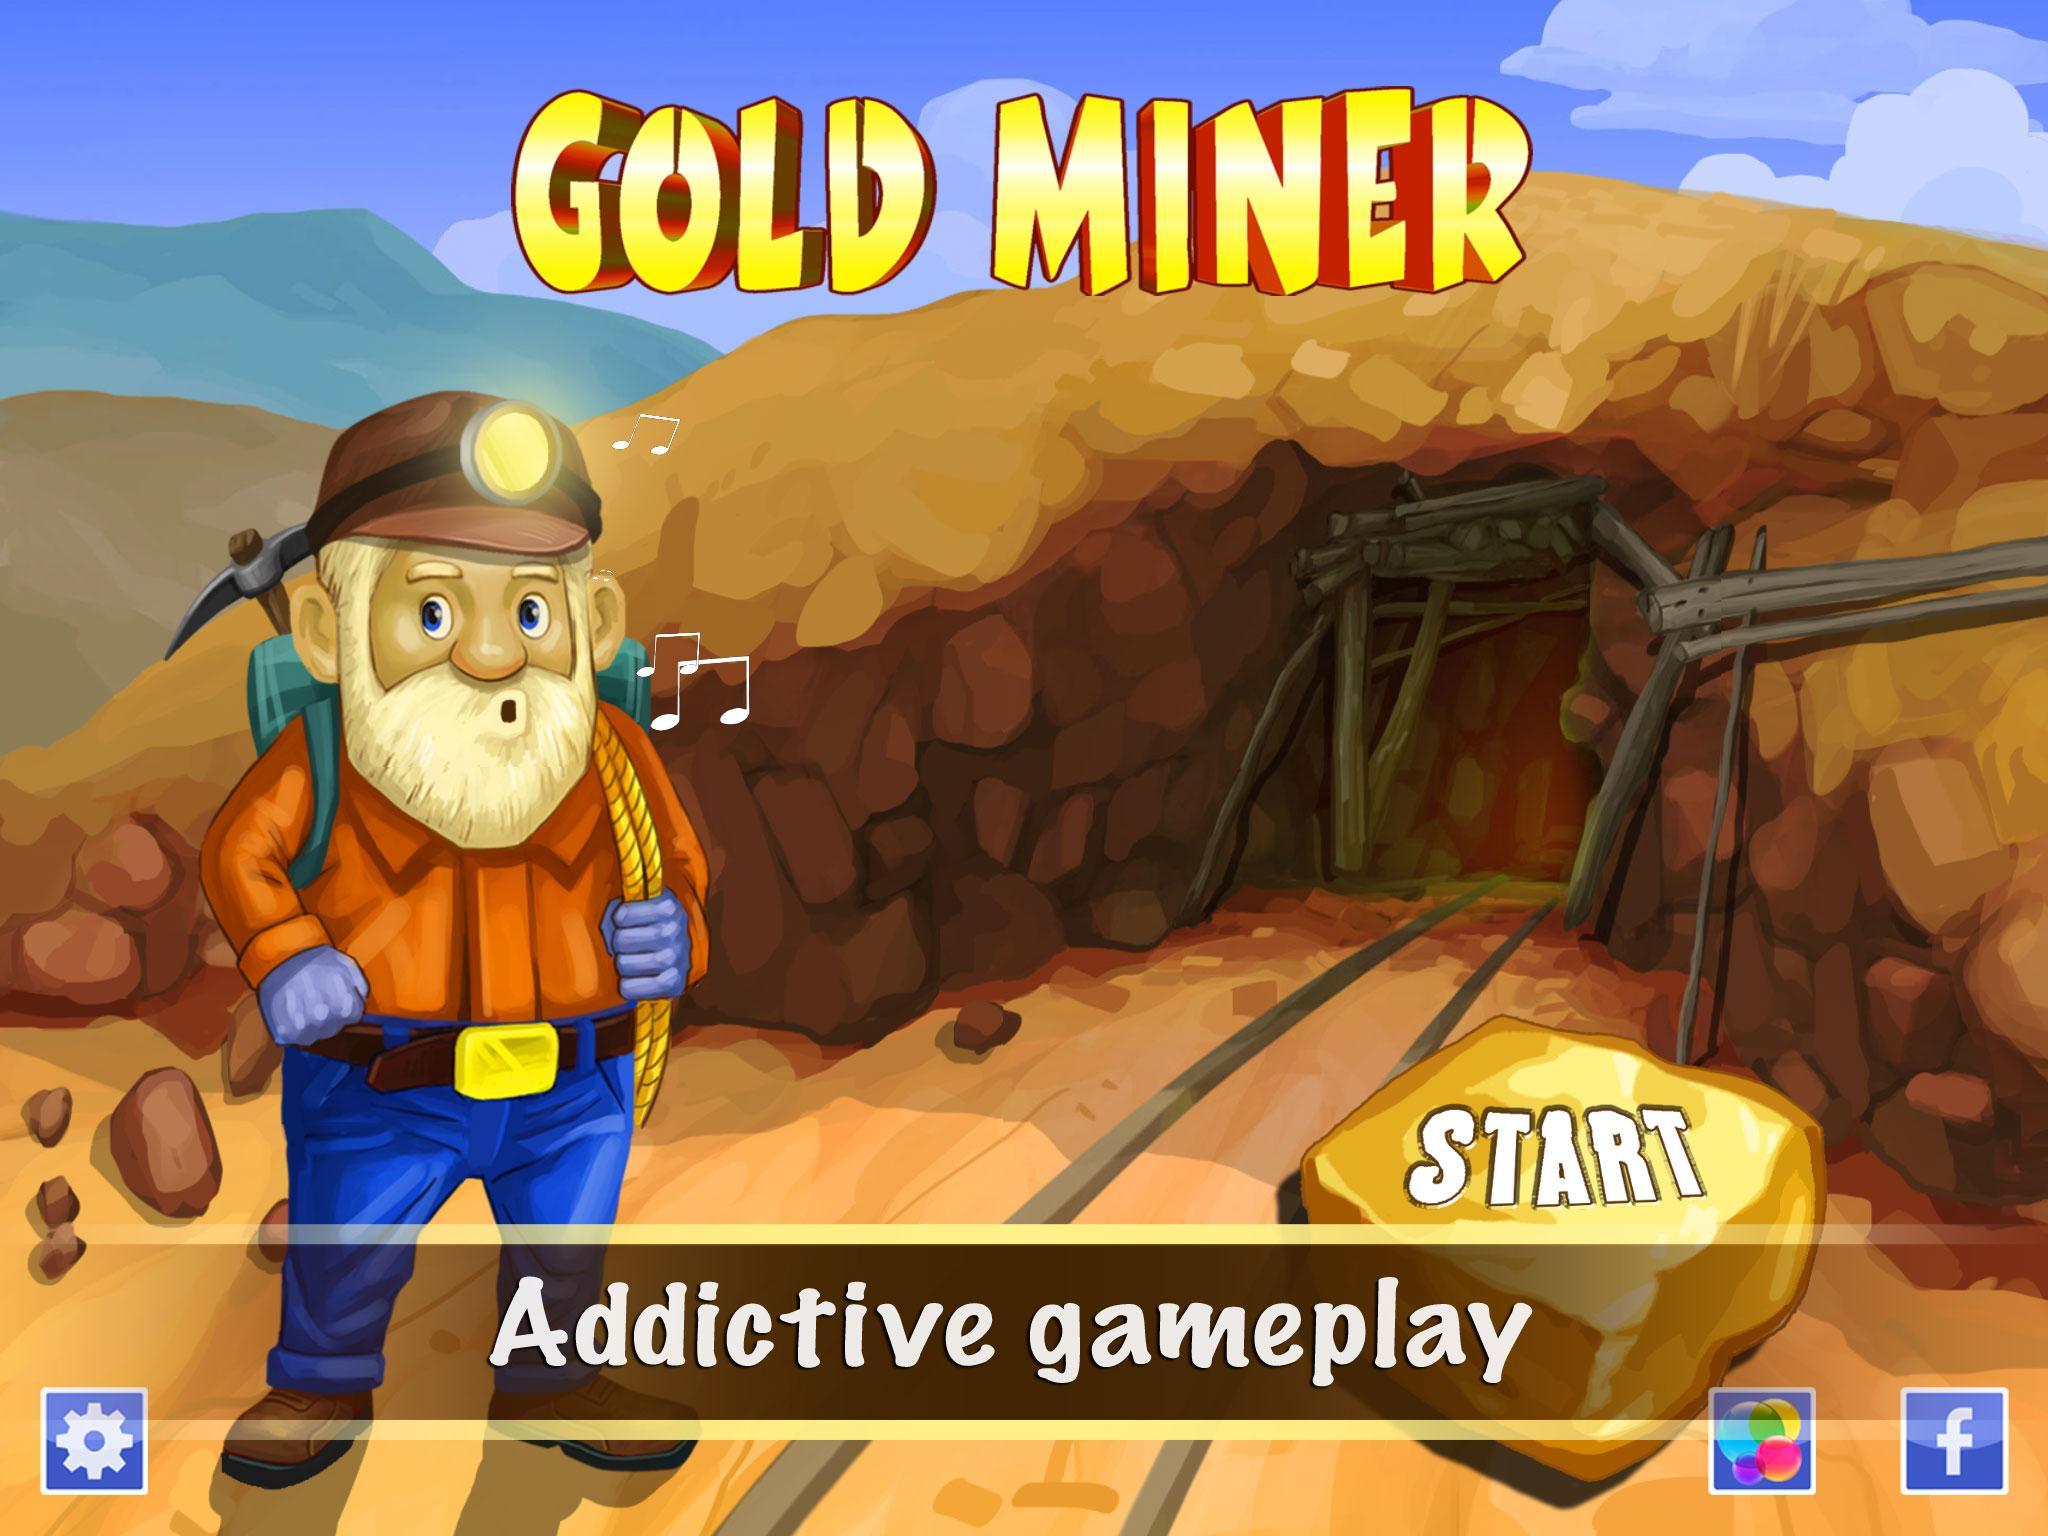 Mining and gaming. Золотоискатель Голд минер. Игра золотодобытчик. Miner игра. Игра Шахтер.